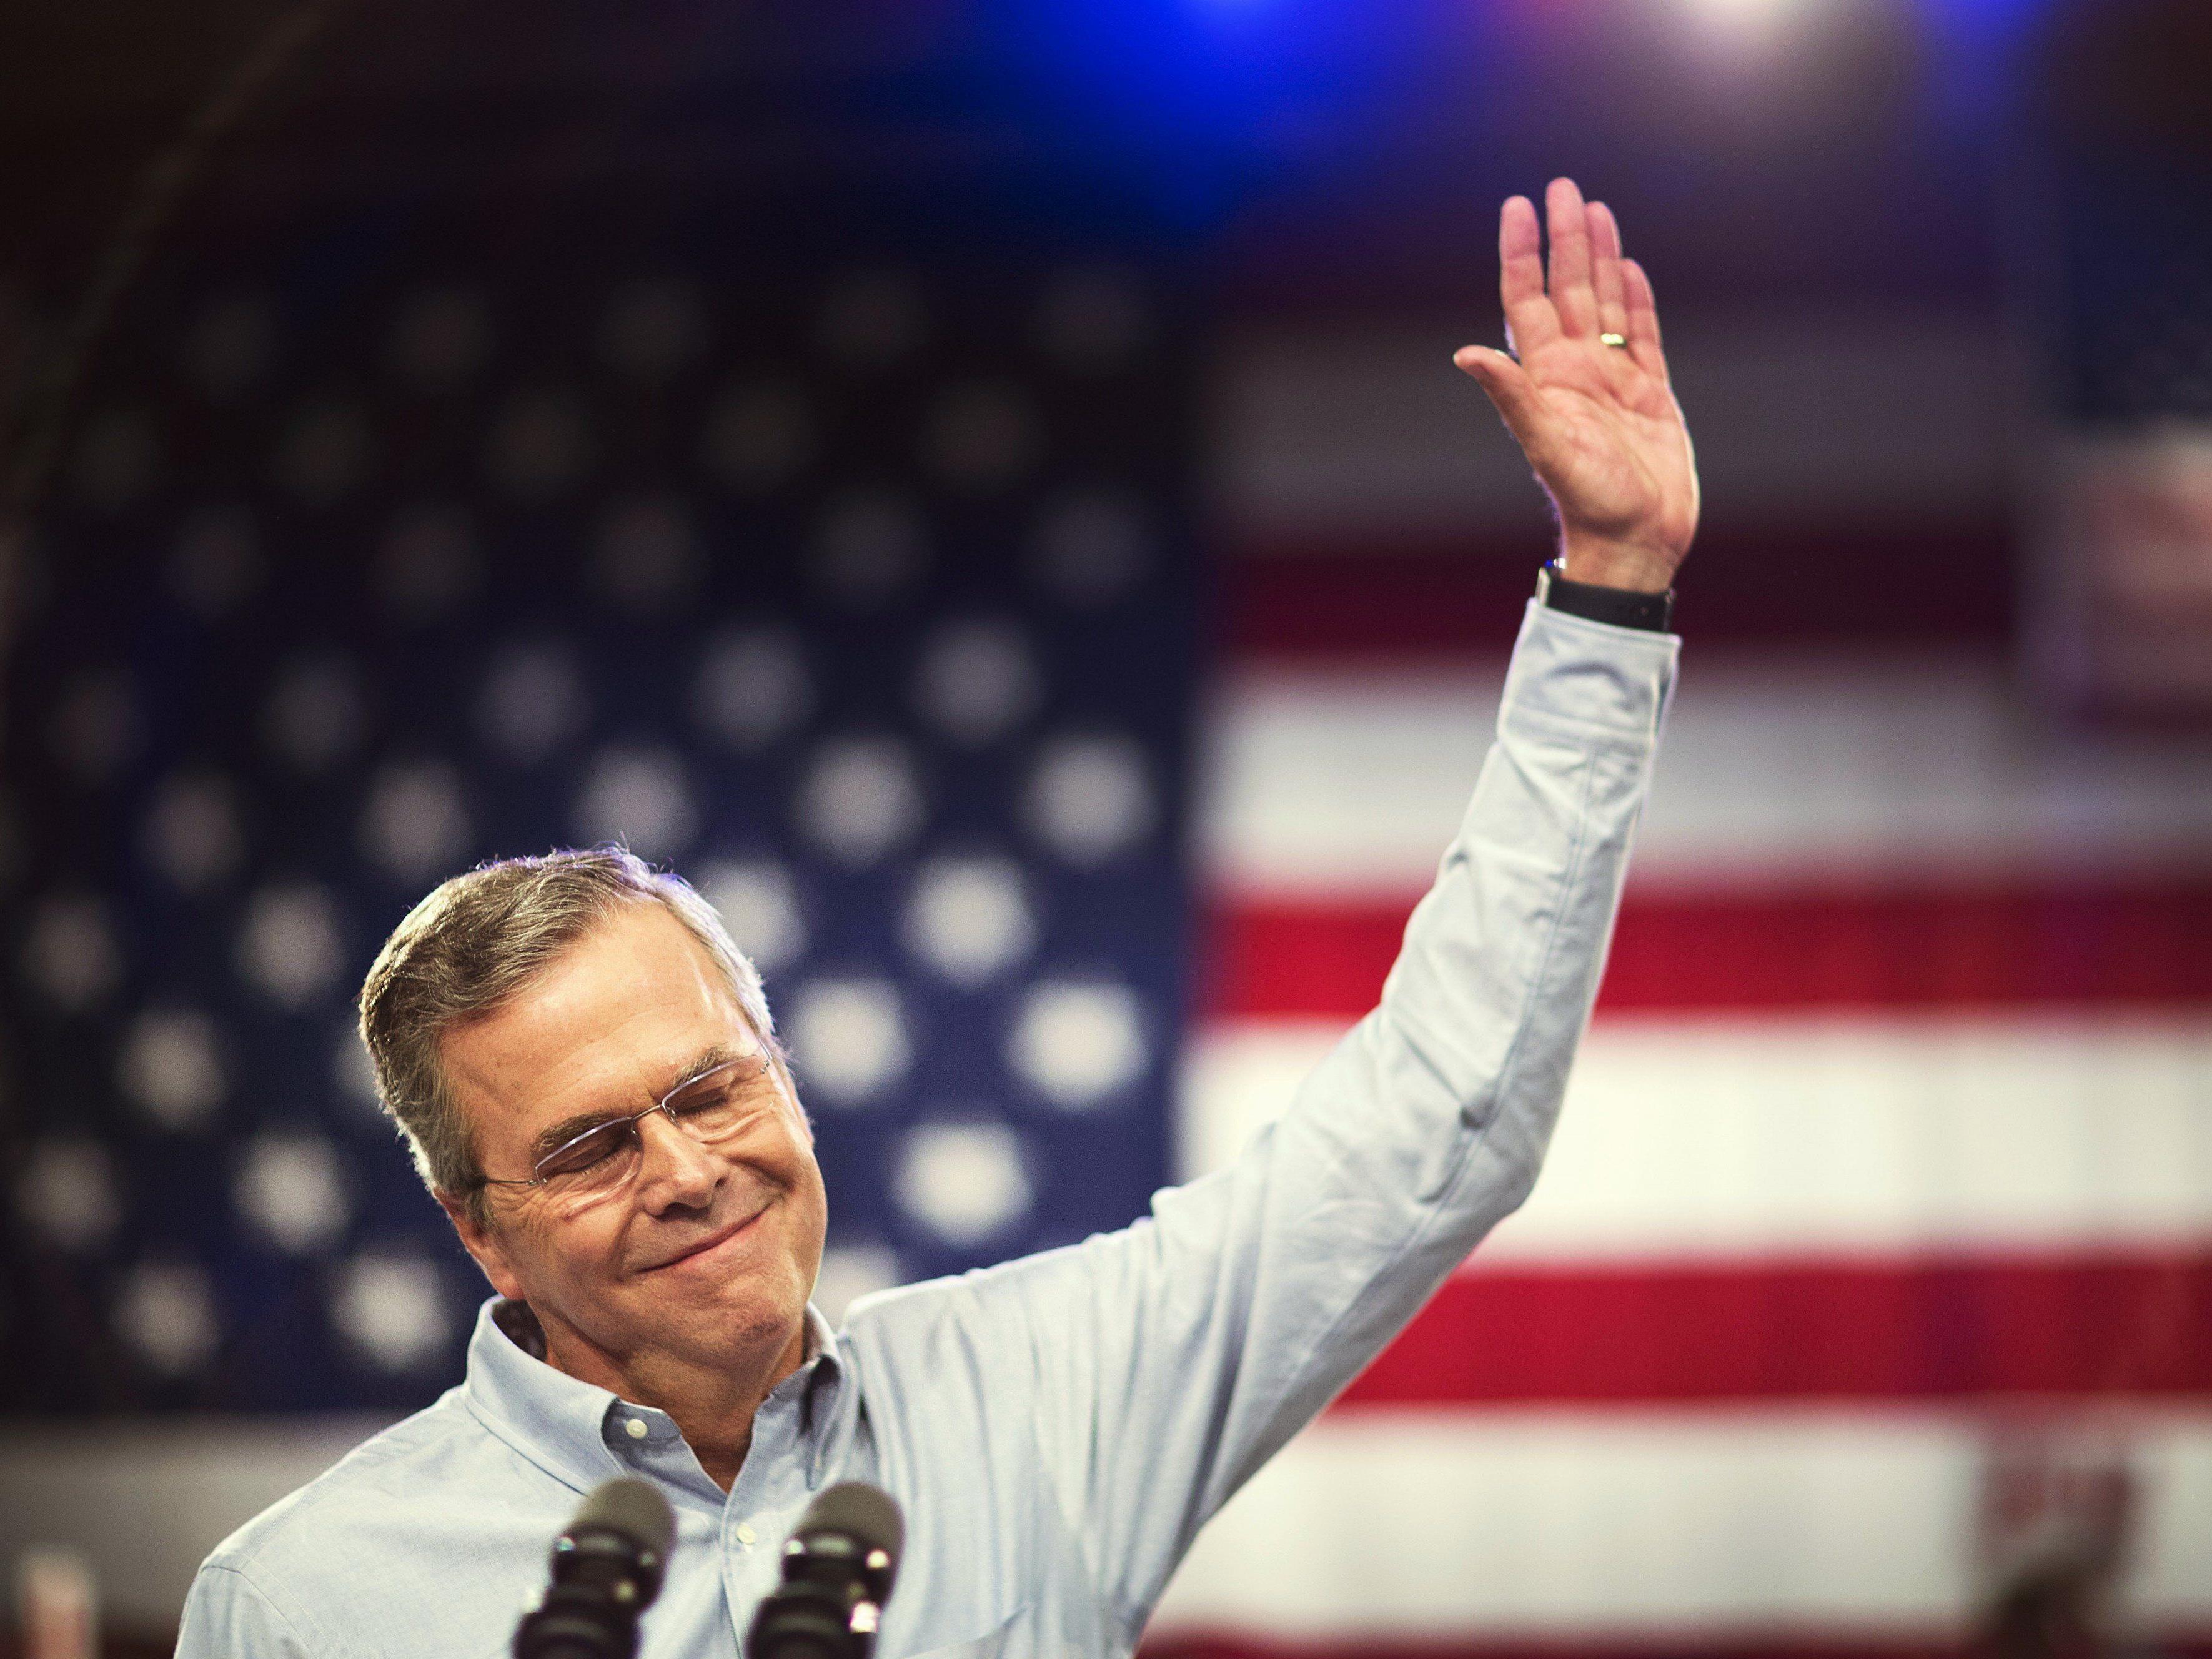 Er will's machen: Jeb Bush kandidiert als dritter der Bush-Dynastie für das Amt des US-Präsidenten.